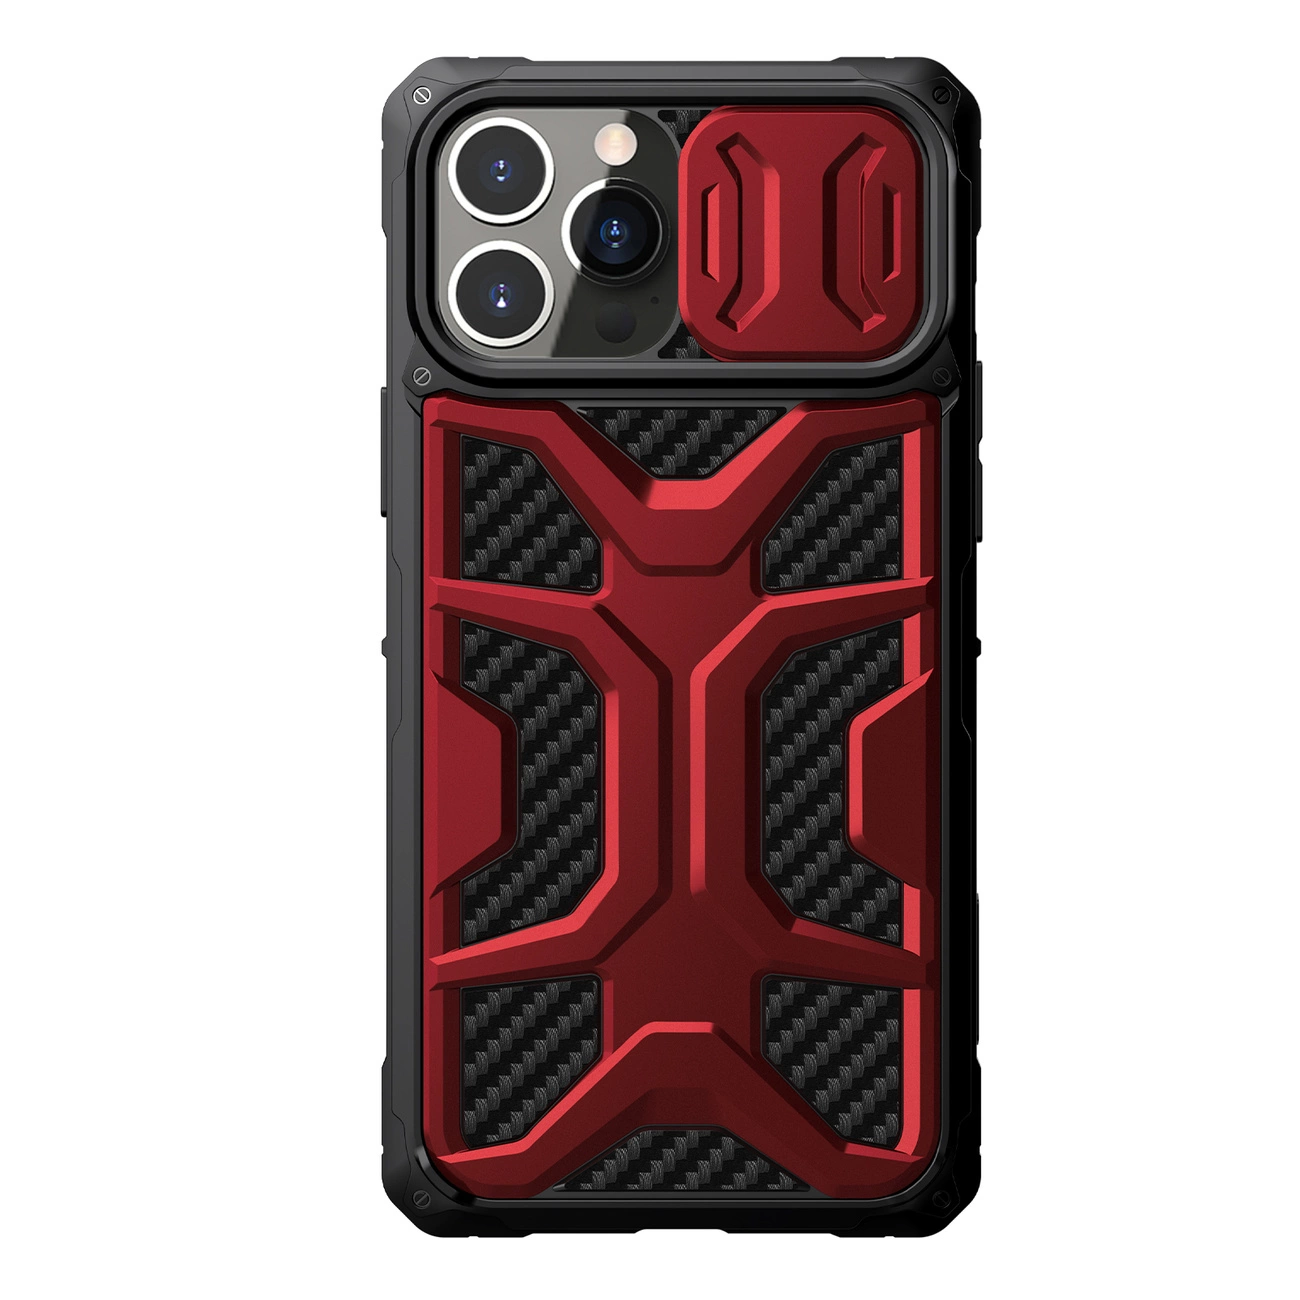 Nillkin Adventurer pouzdro pro iPhone 13 Pro Max obrněné pouzdro s krytem fotoaparátu červené